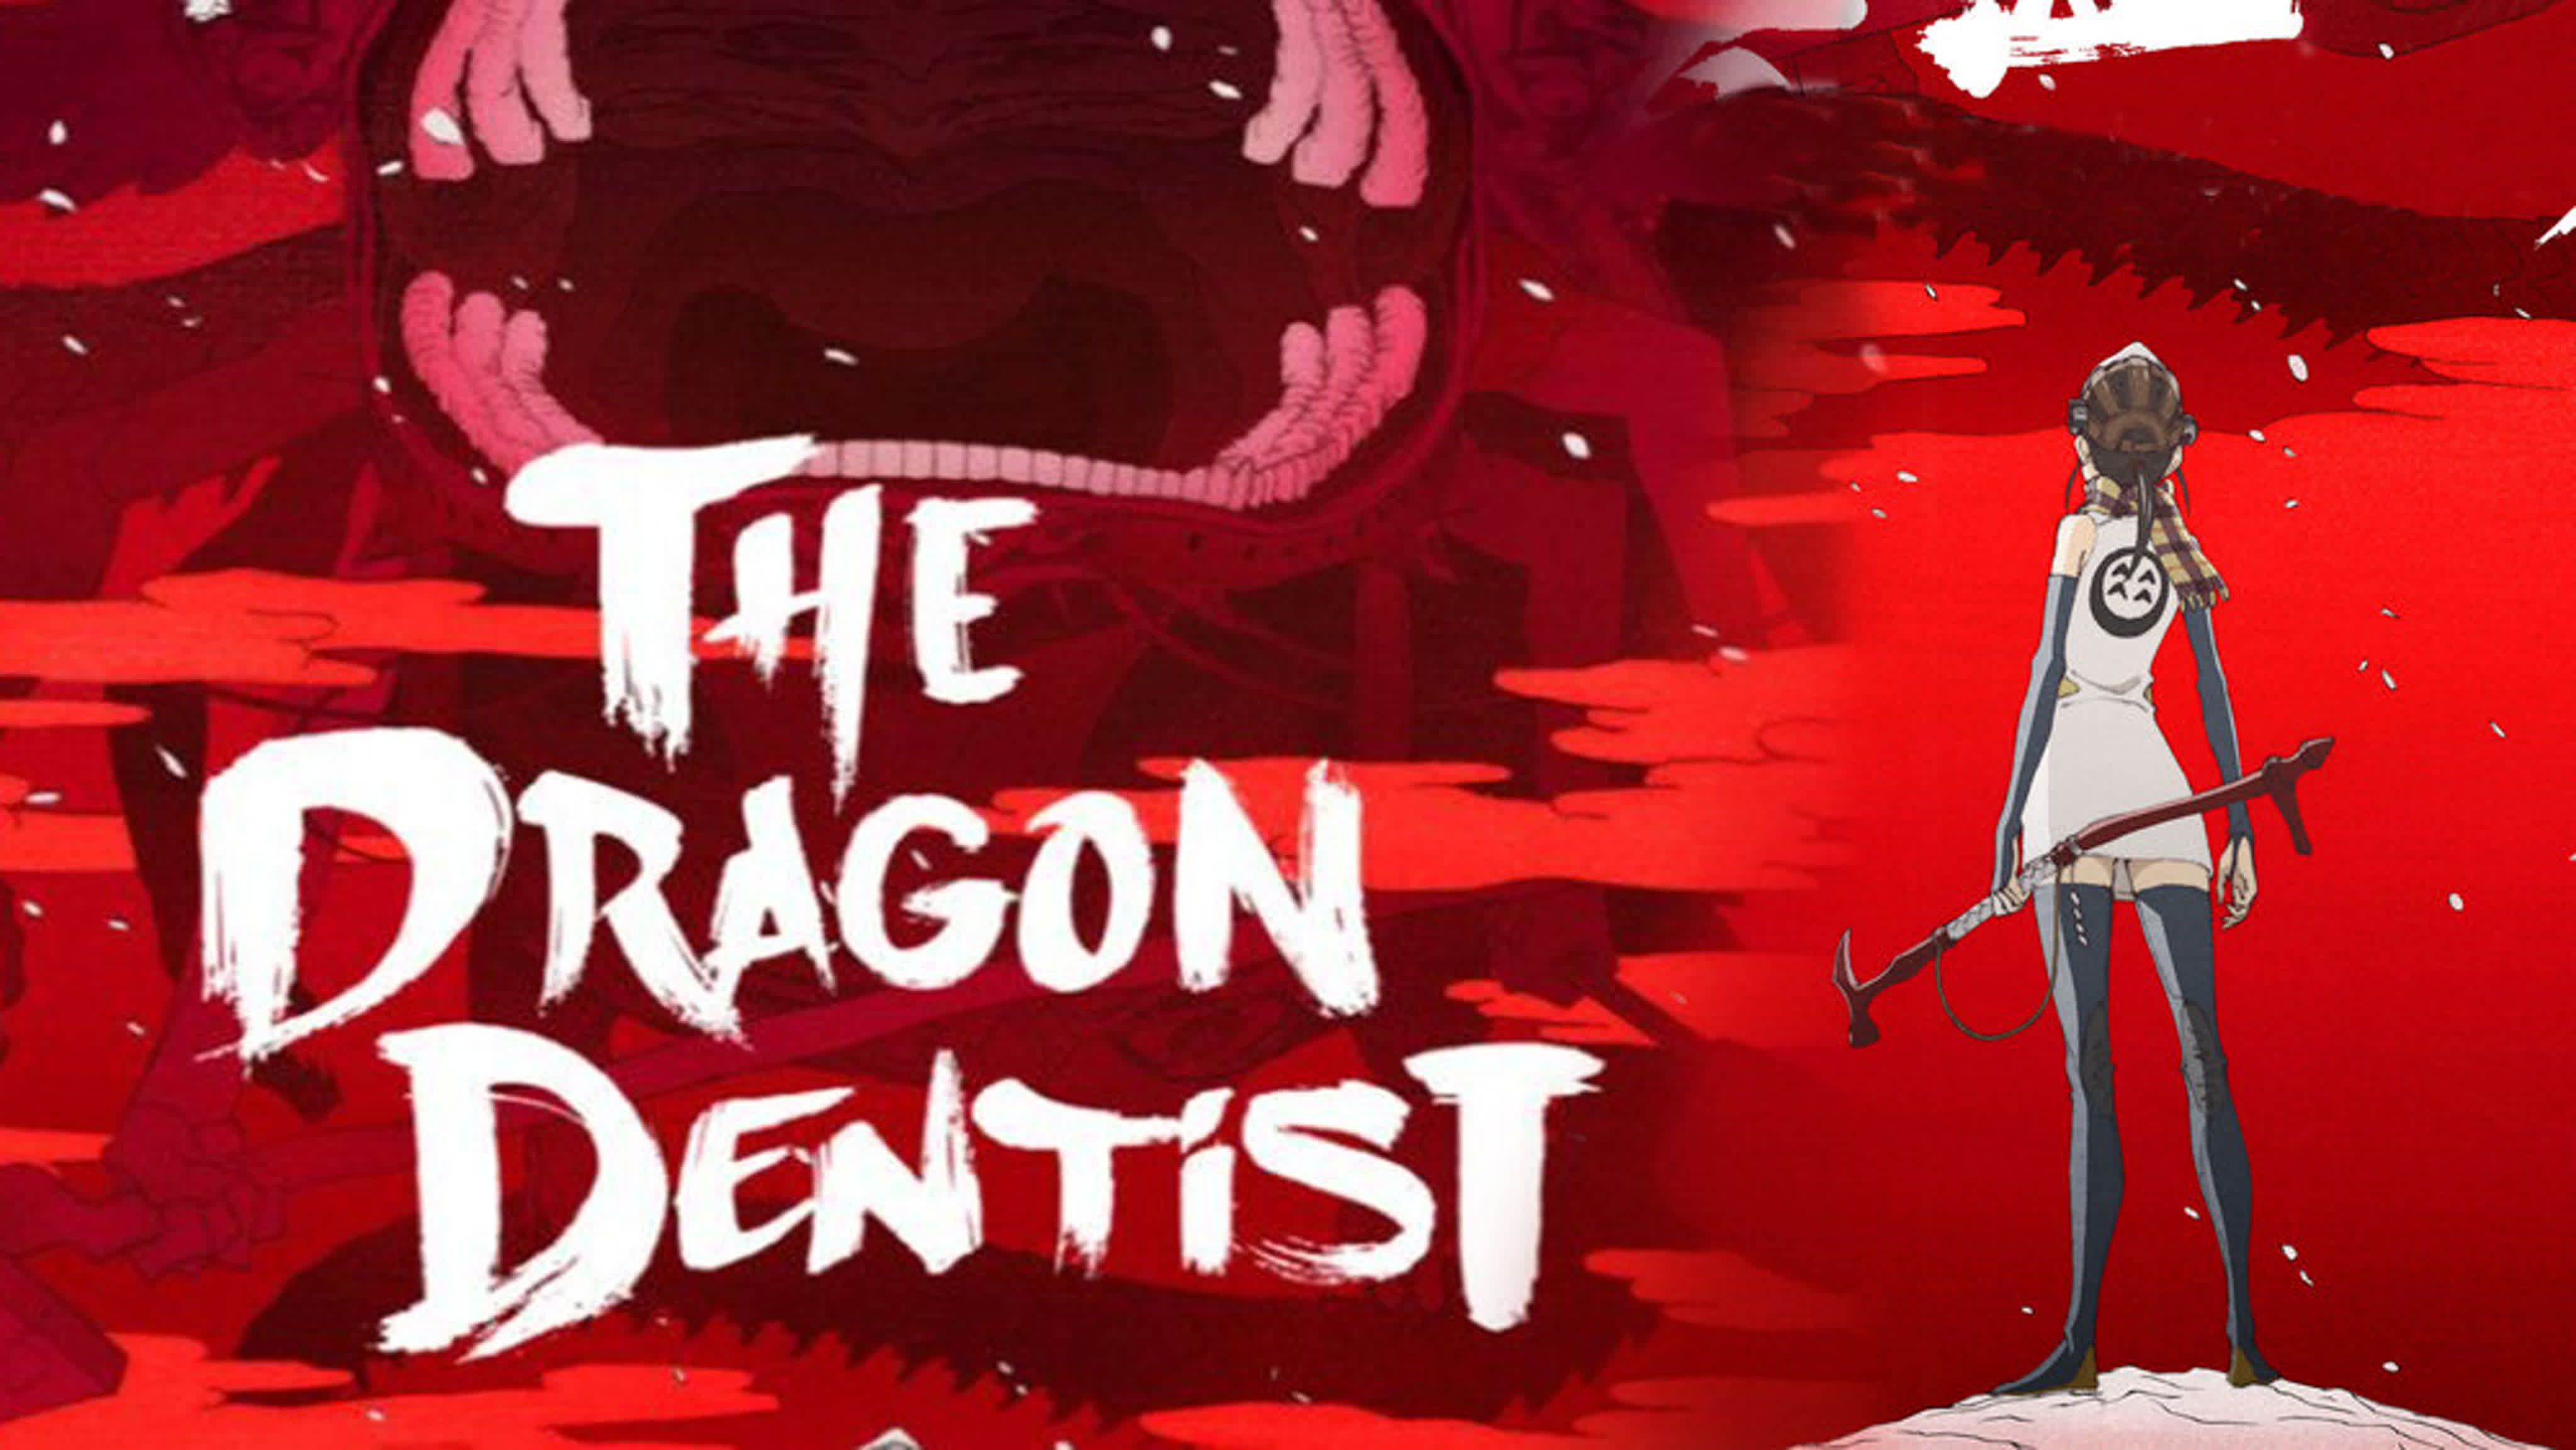 Драконий зубной  Ryuu no Haisha  The Dragon Dentist  Драконий дантист